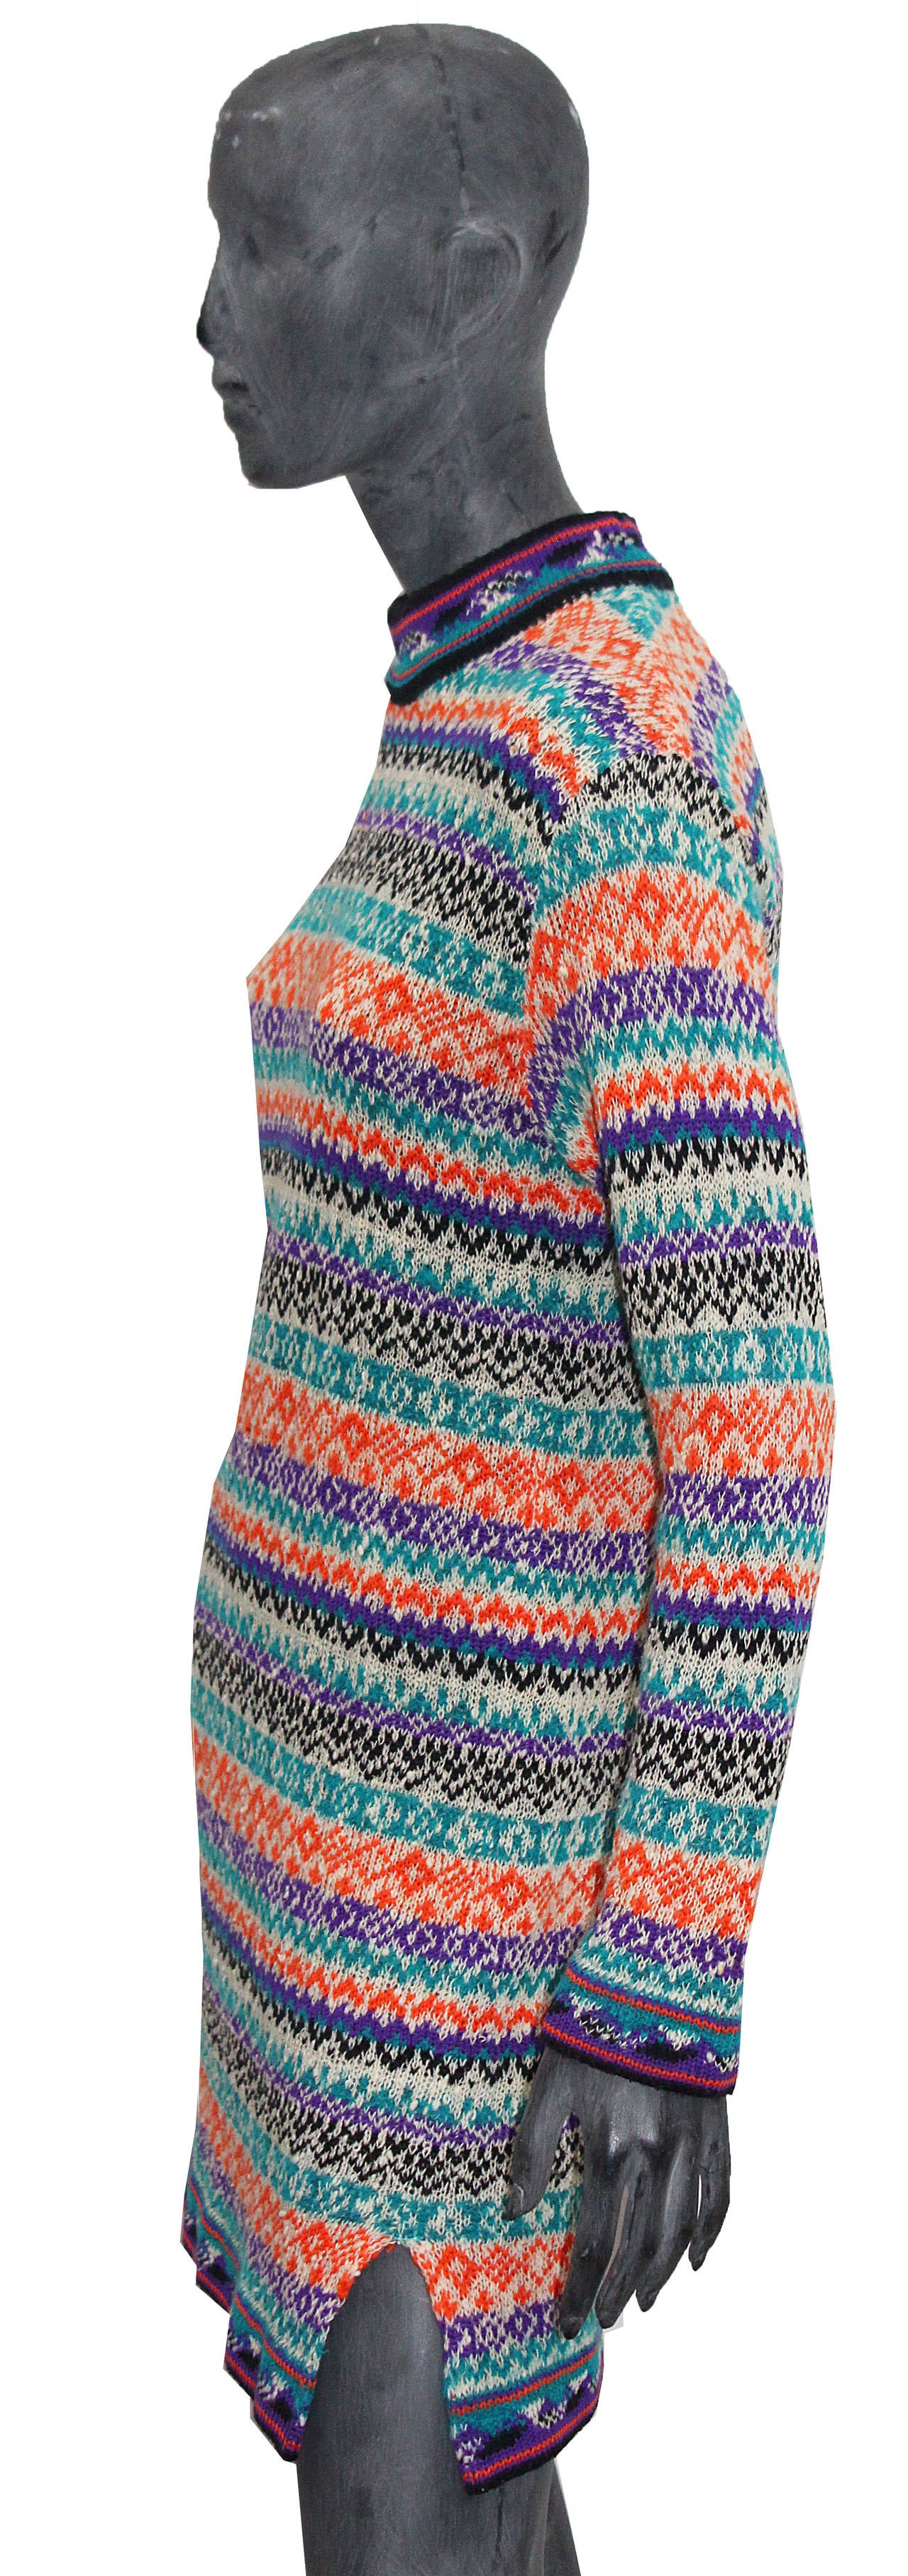 Gray 1970s Yves Saint Laurent knitted mini dress